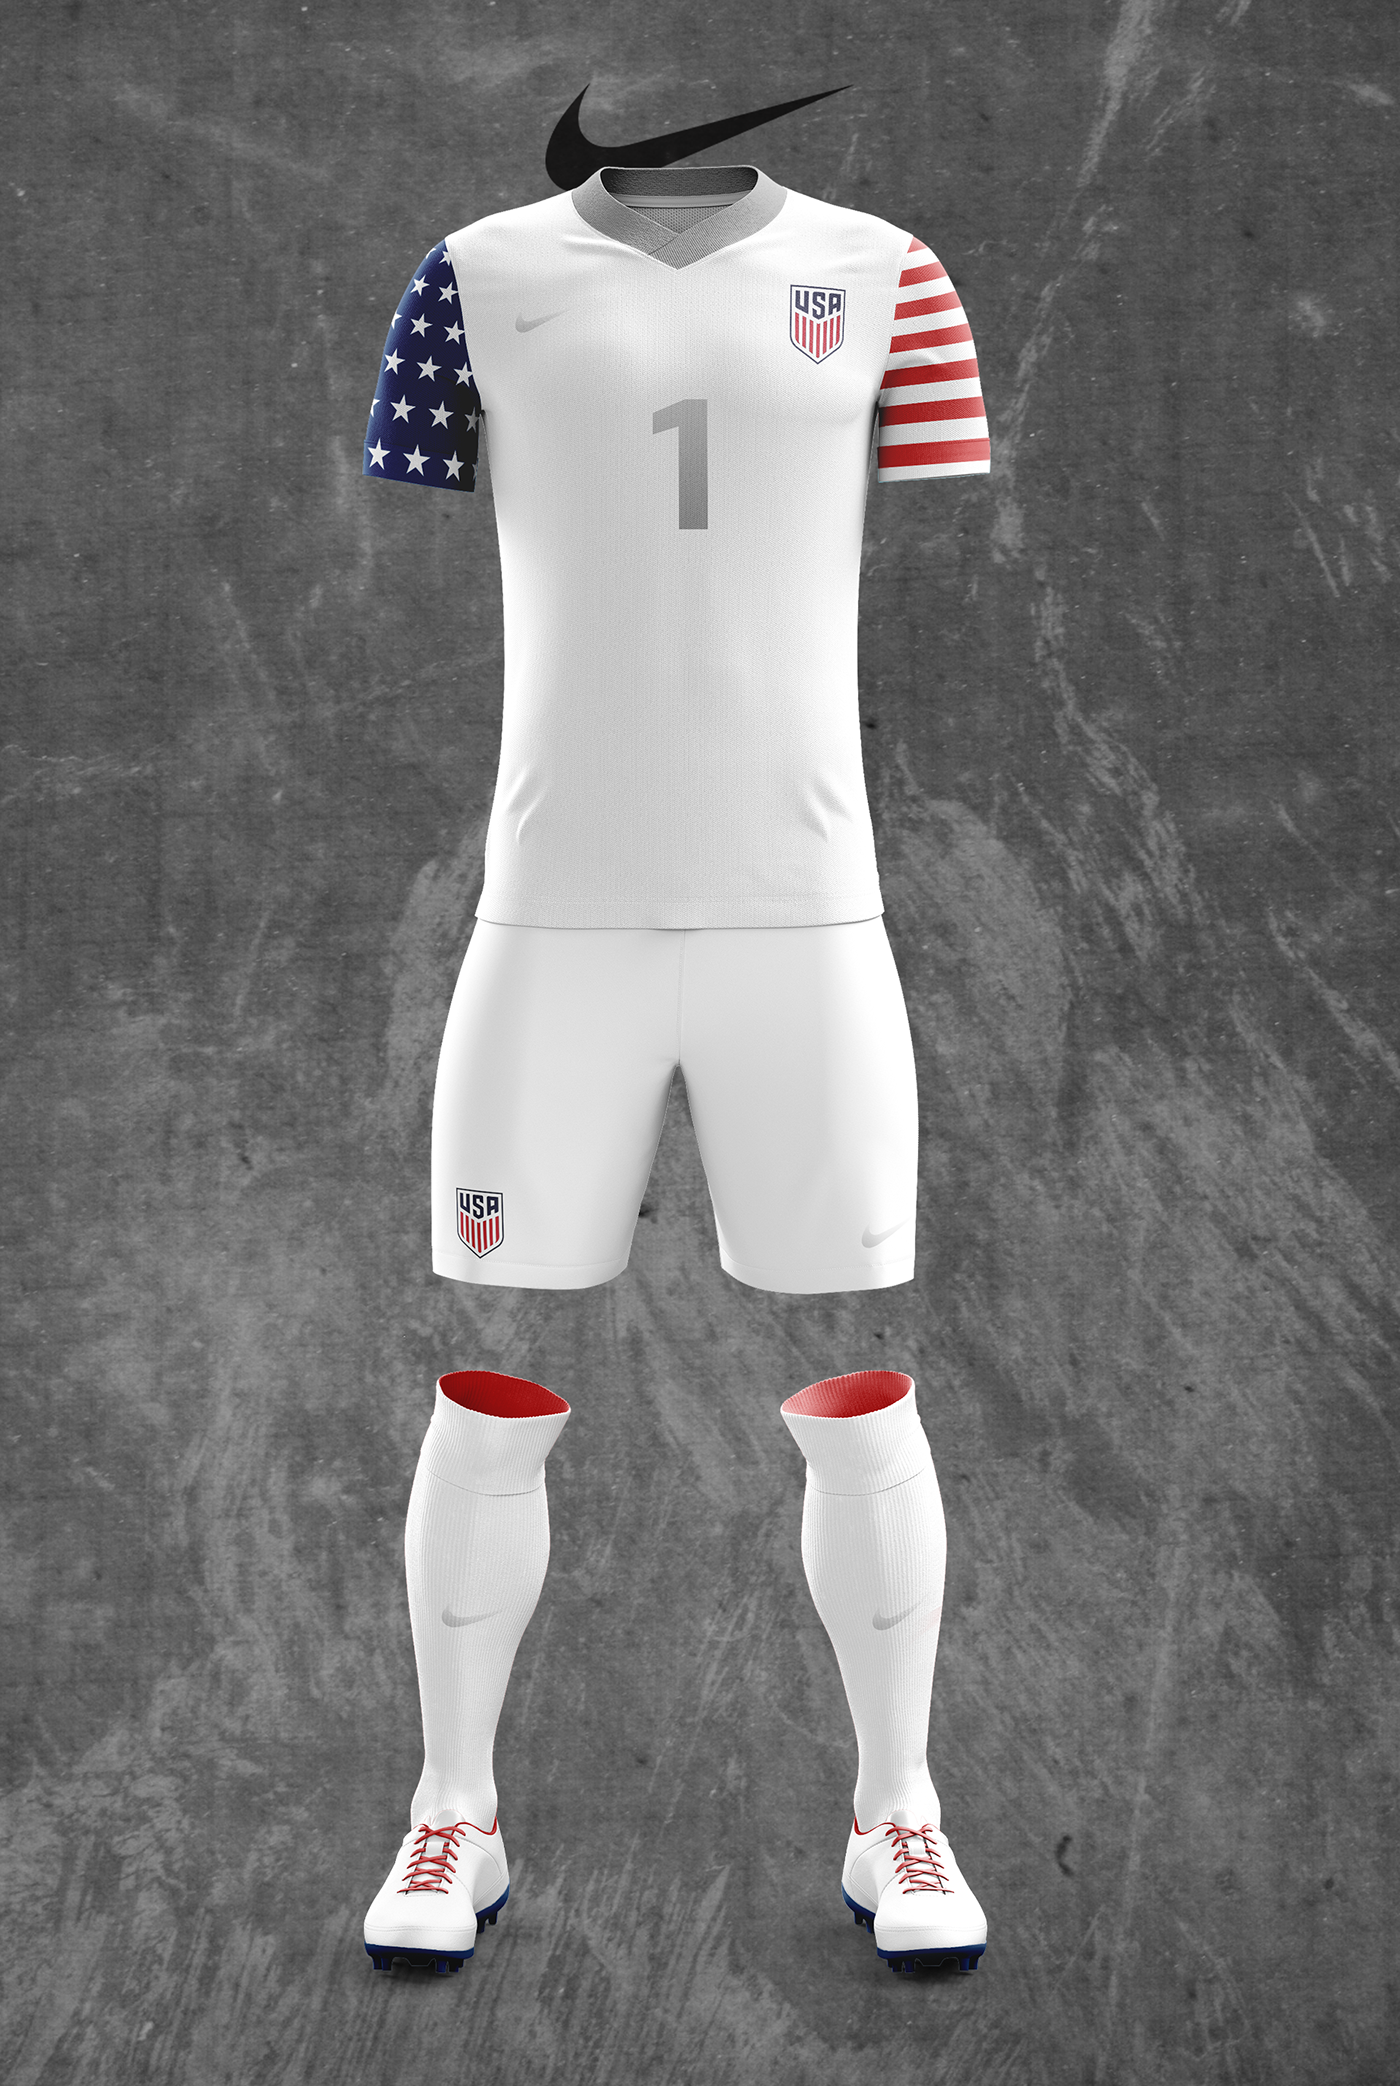 US Men's National Team Soccer Kit Designs on Behance